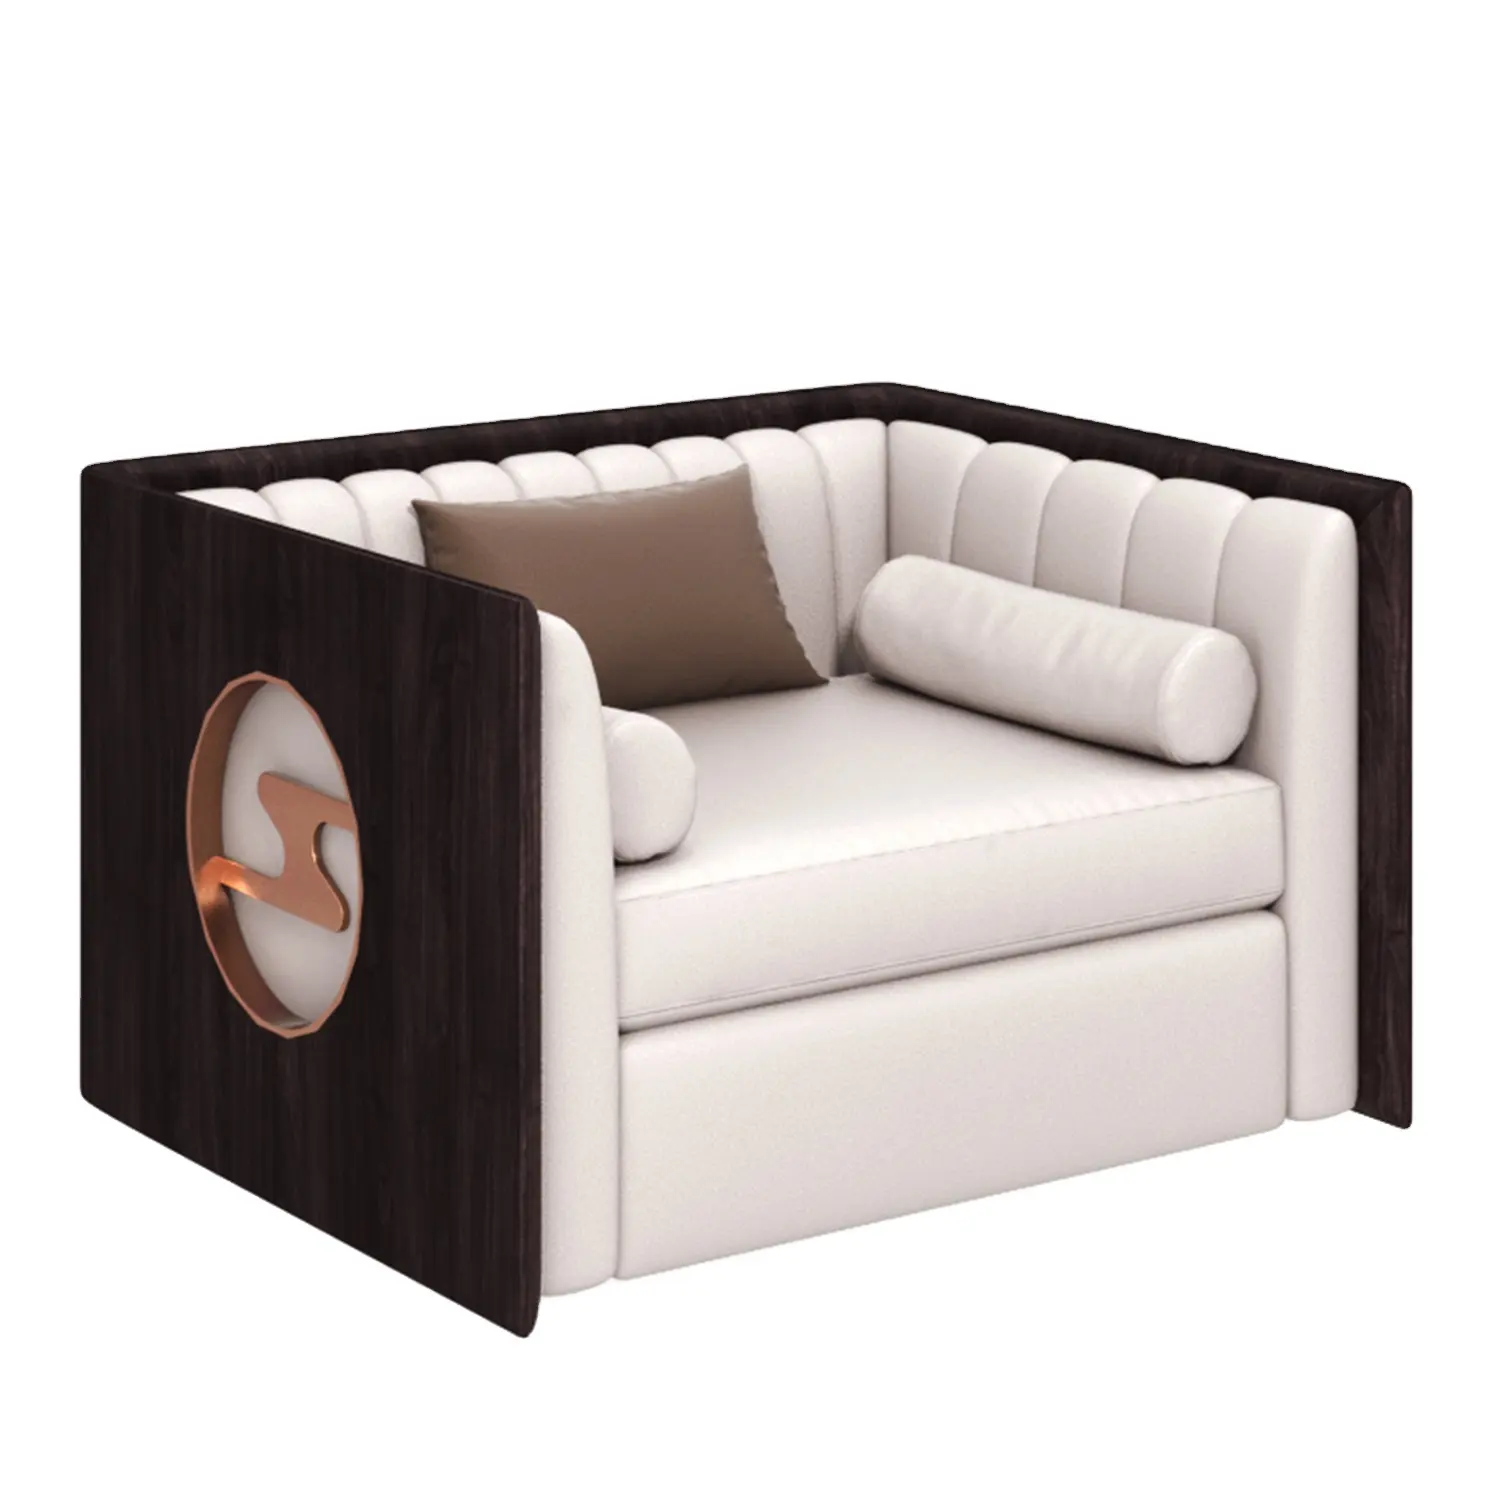 ชุดโซฟาหนัง,โครงไม้เก้าอี้หนังโมเดิร์นสำหรับห้องนั่งเล่น